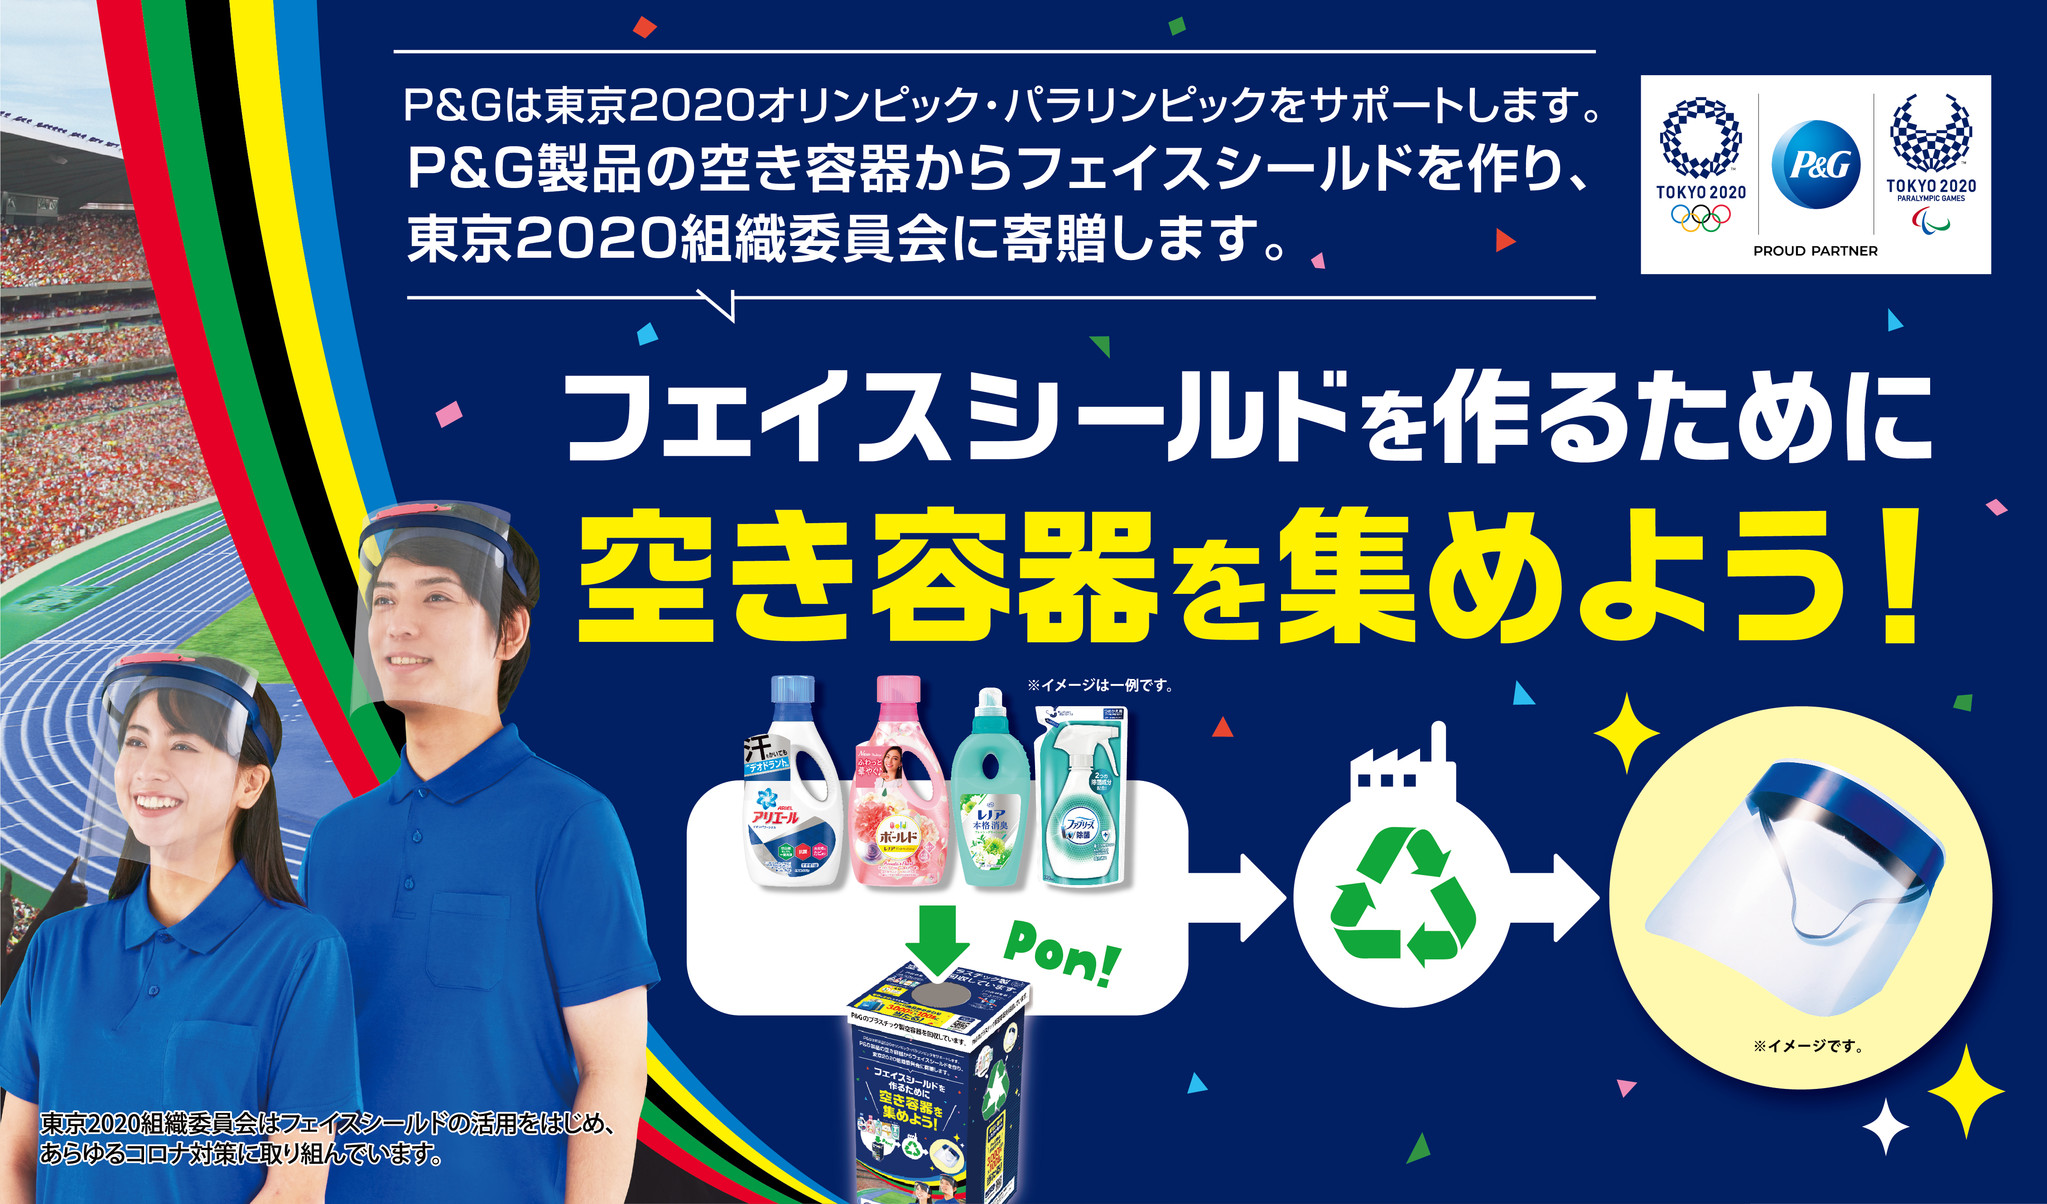 東京オリンピック パラリンピック応援 P G製品の空き容器からフェイスシールドを作り東京組織委員会 に寄贈するプロジェクト1月8日より始動 ｐ ｇジャパン合同会社のプレスリリース